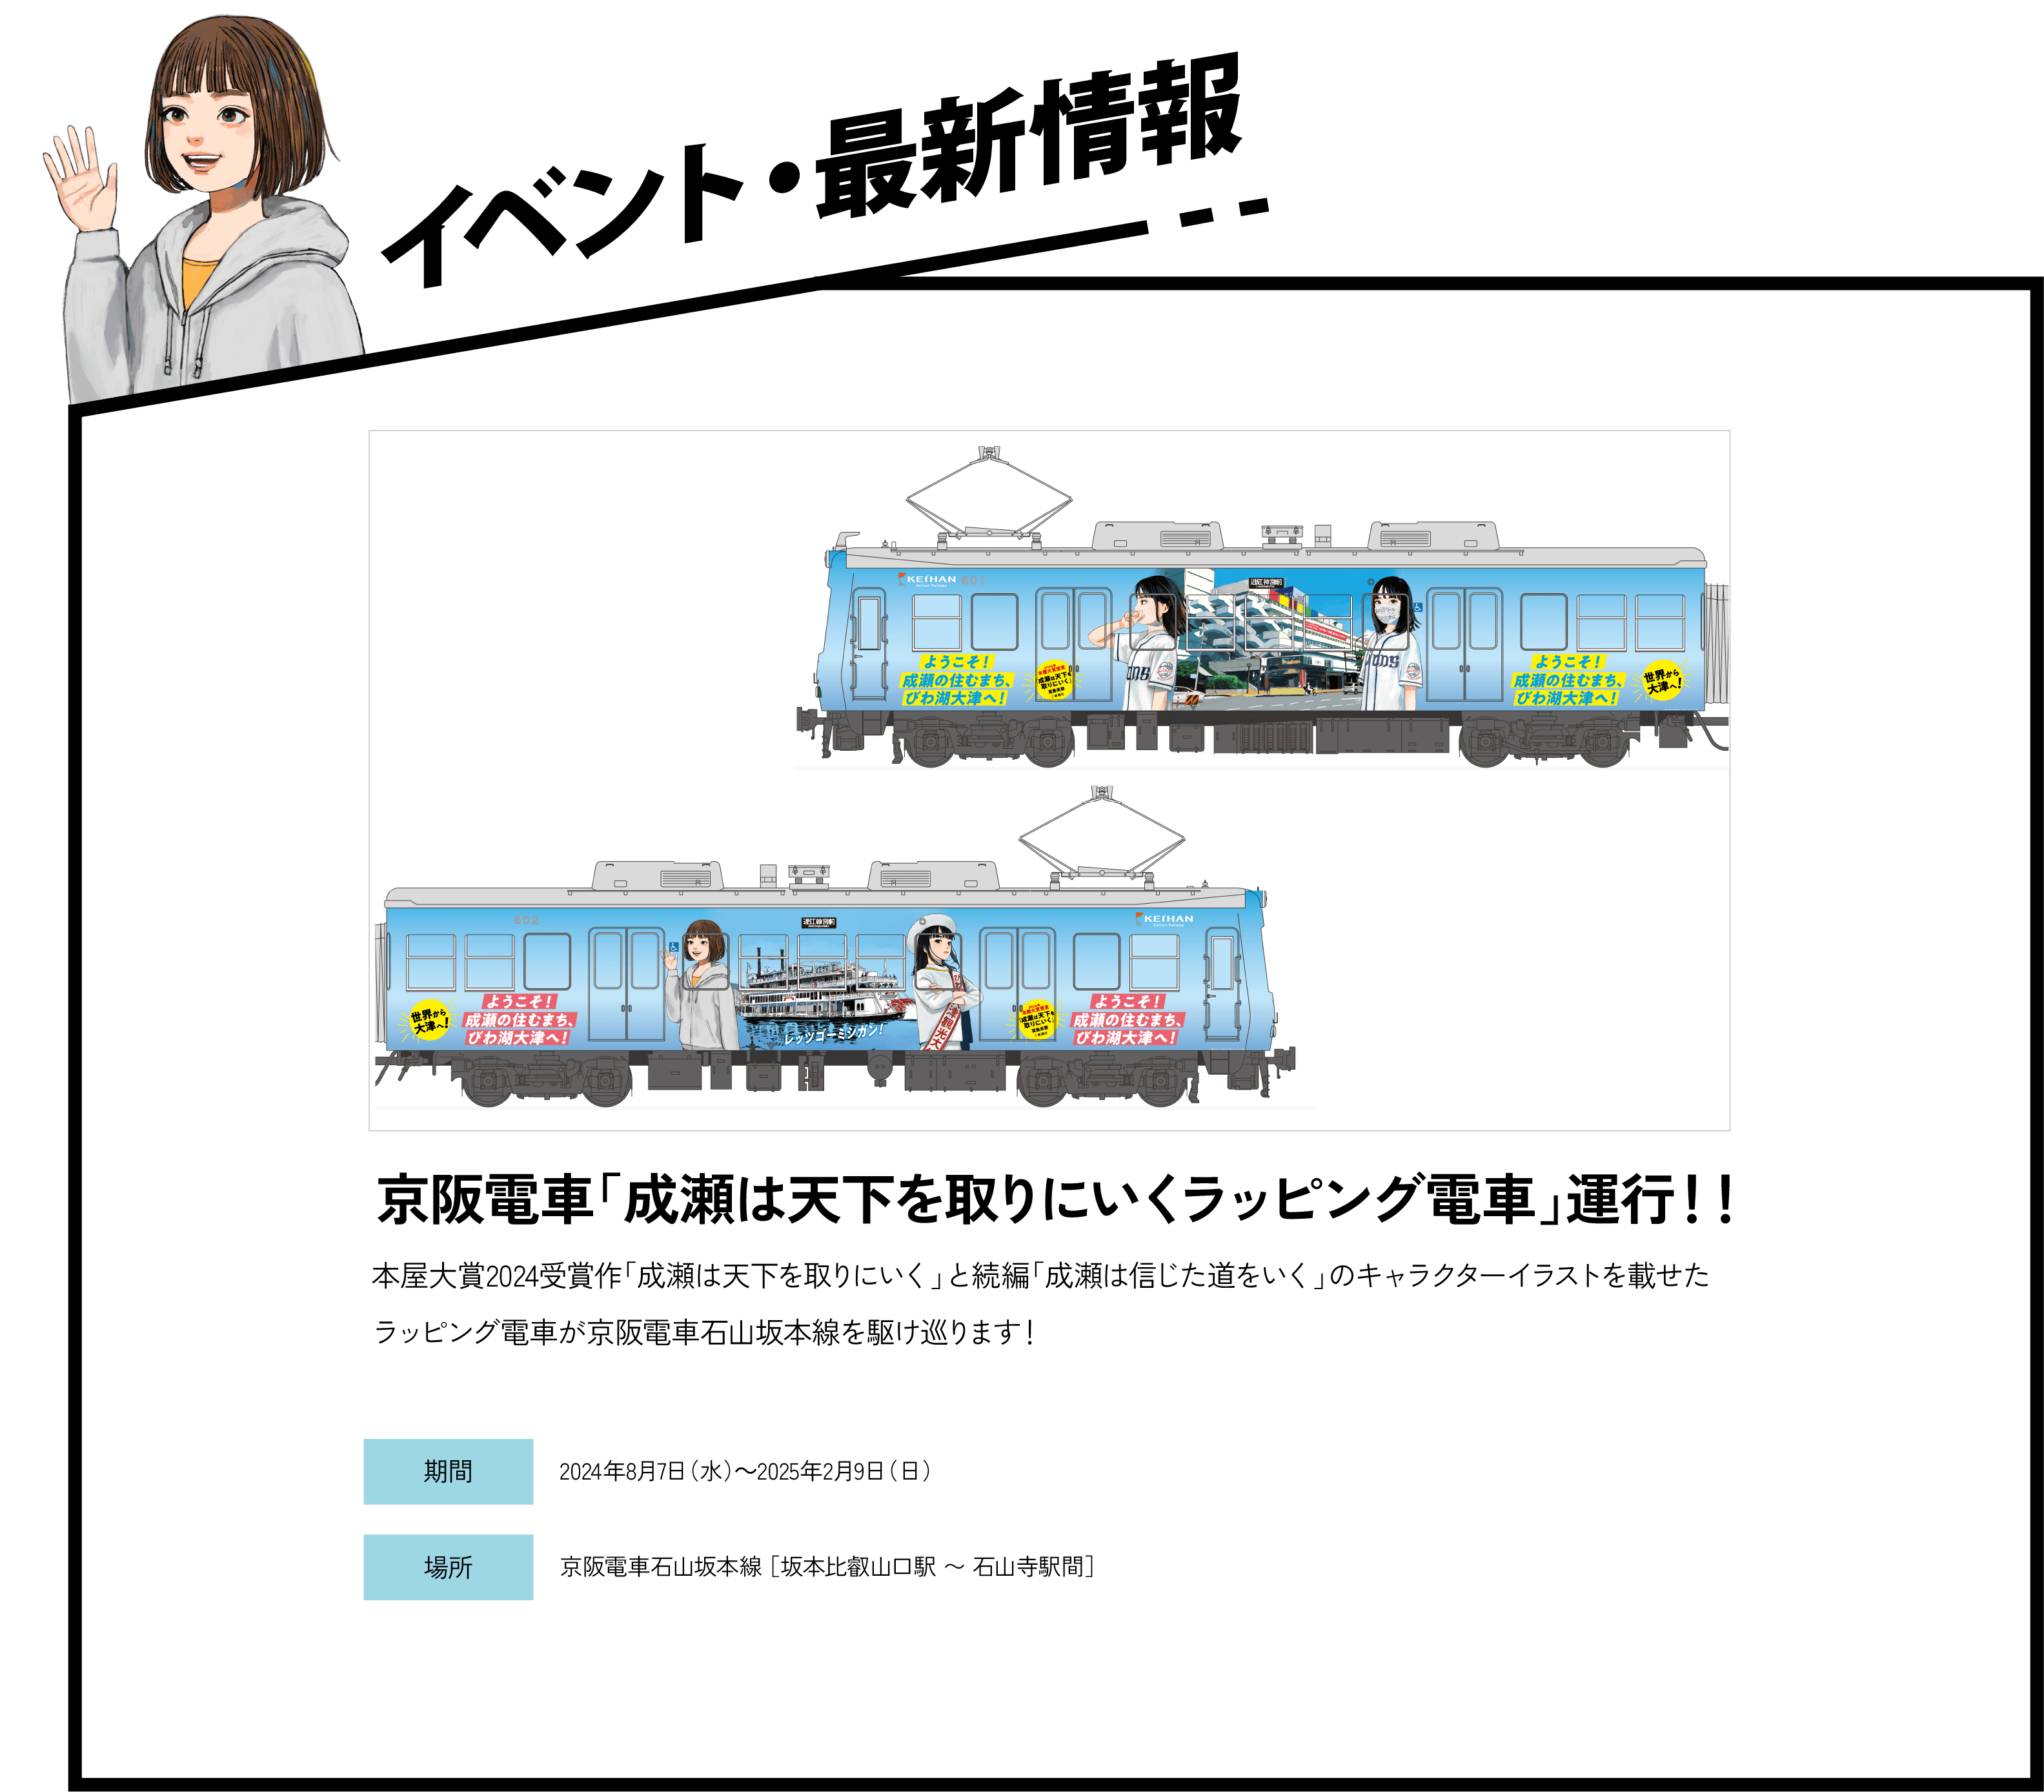 京阪電車「成瀬は天下を取りにいくラッピング電車」運行